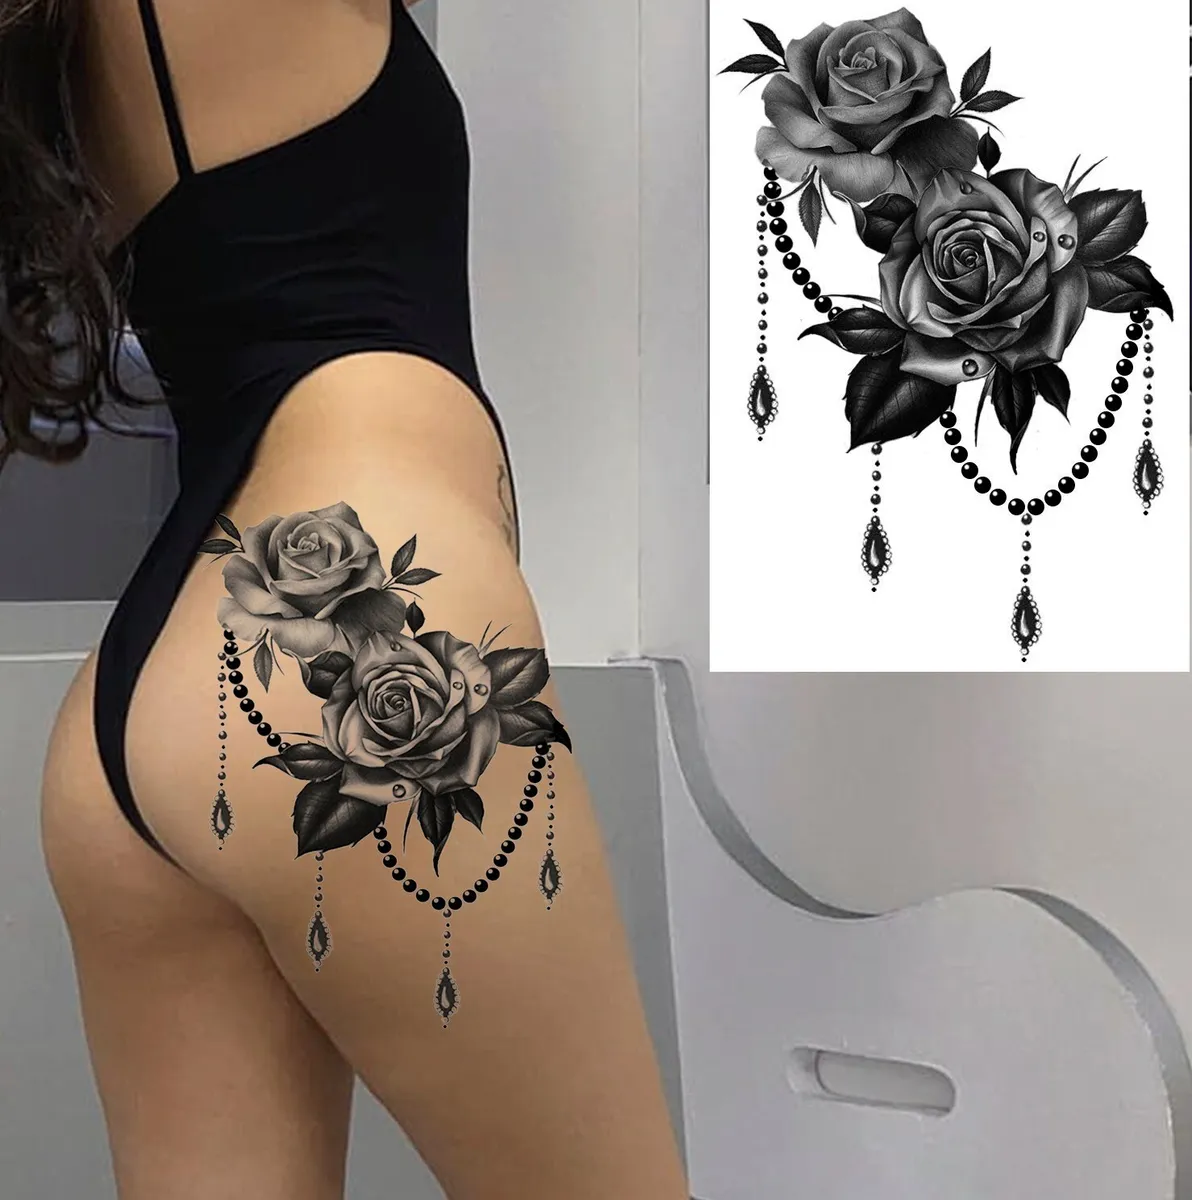 adriana digiovanni share tattoo on booty photos